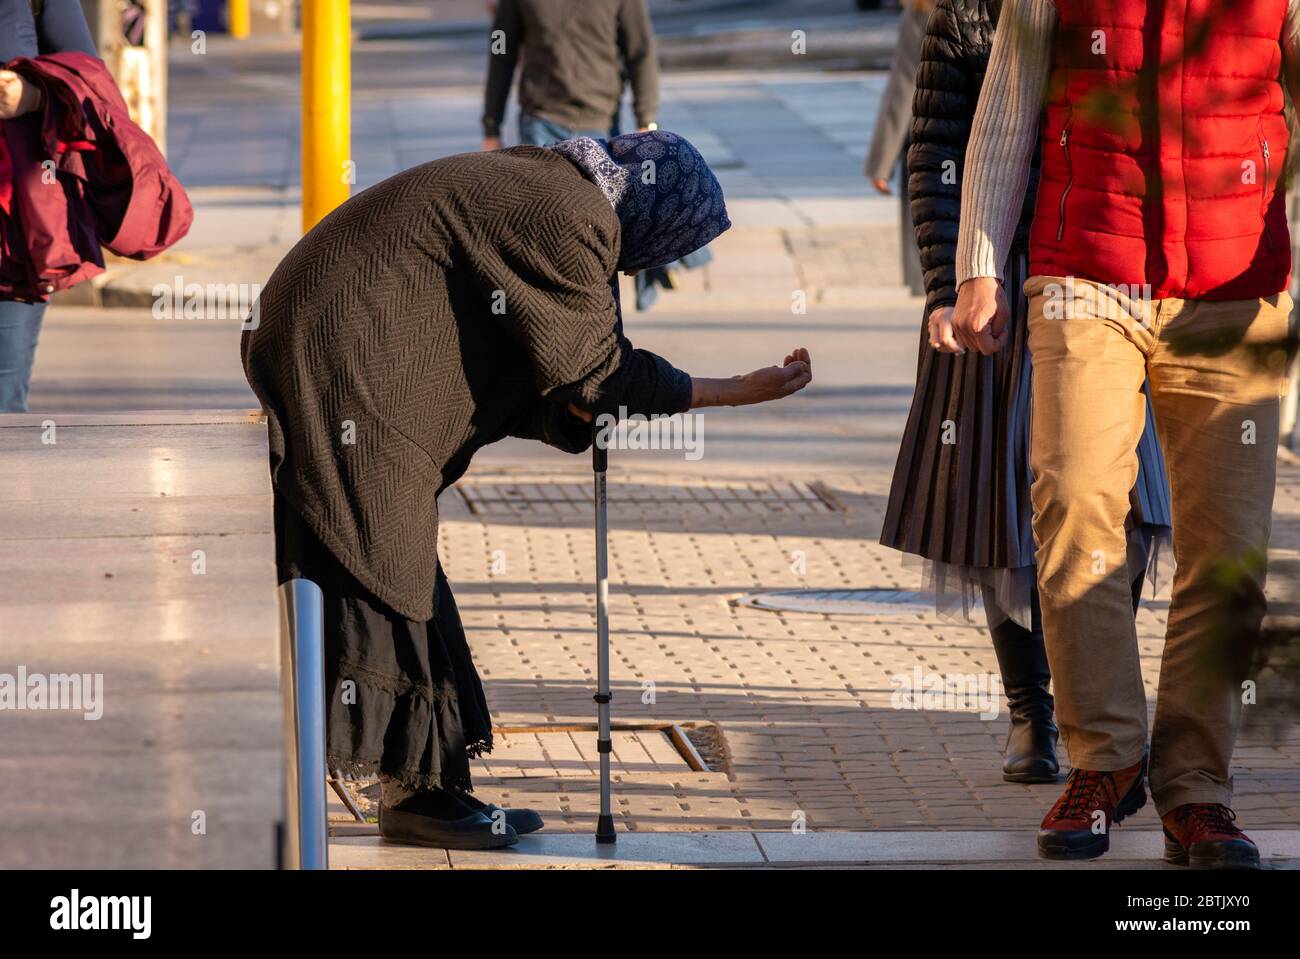 Ältere Bettlerin, die schwarze Kleidung trägt und einen Stock hält und in Sofia, Bulgarien, Osteuropa, Balkan und der EU um Geld bettelt Stockfoto